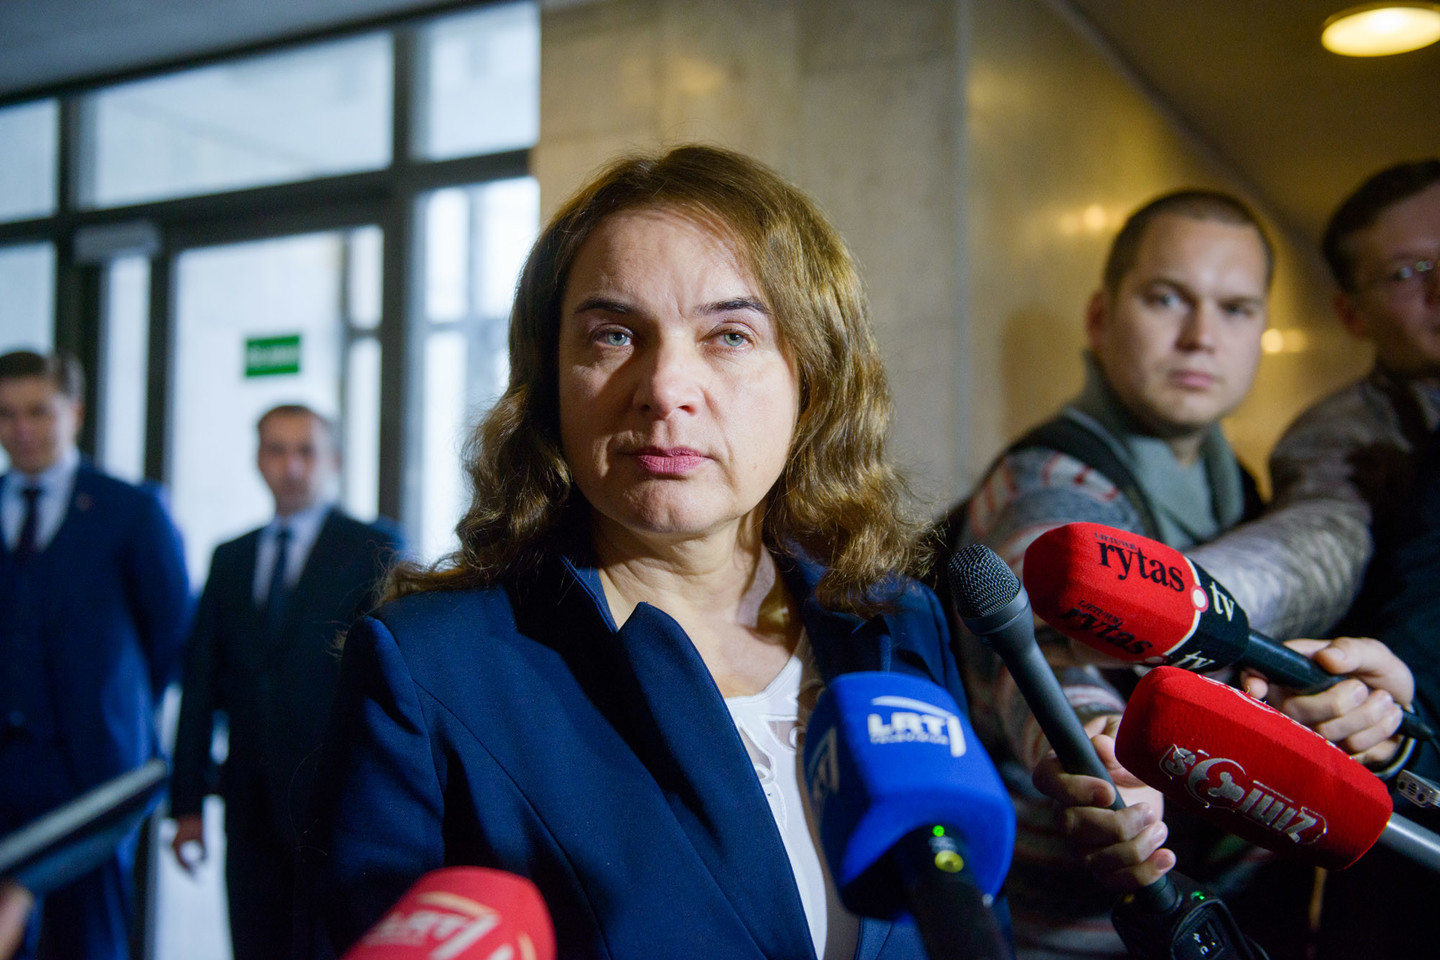 Socialdemokratams nusprendus trauktis iš koalicijos poste nutarė likti ne tik L.Linkevičius, bet ir nepartinė teisingumo ministrė Milda Vainiutė.<br>J.Stacevičiaus nuotr.